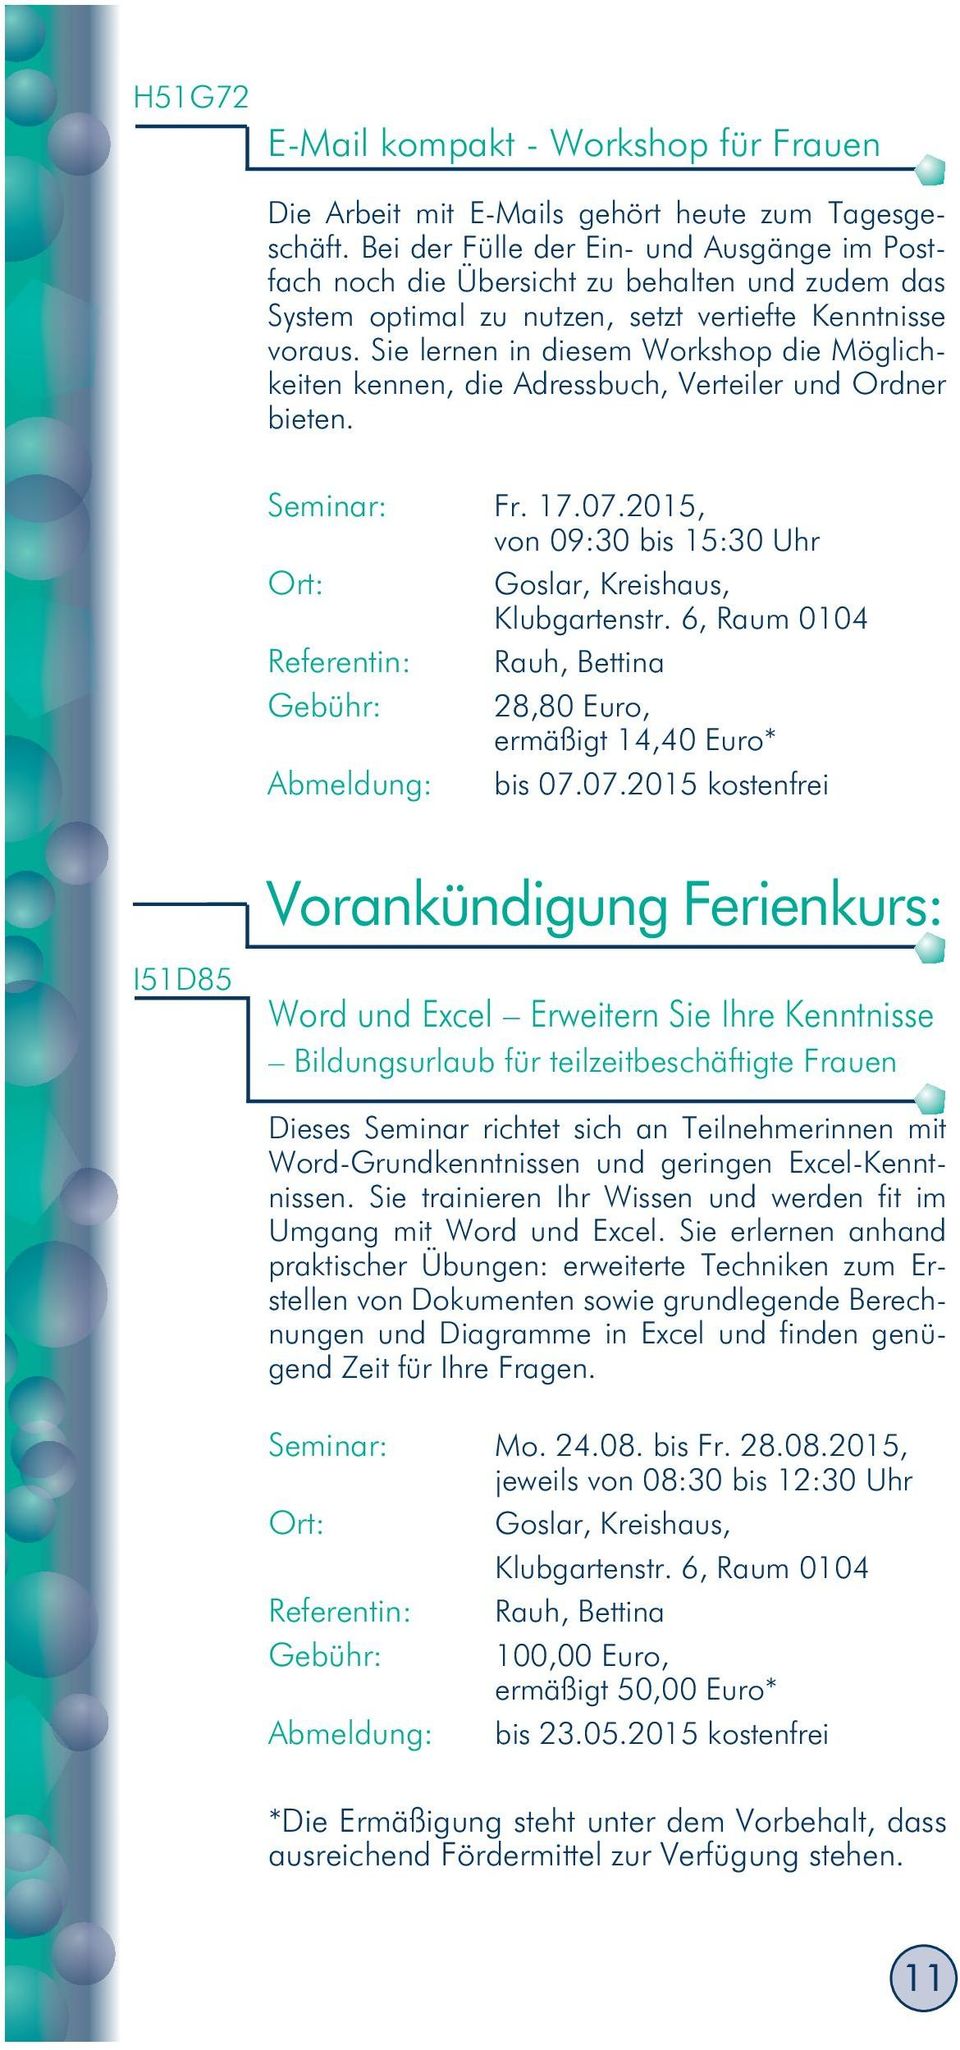 Sie lernen in diesem Workshop die Möglichkeiten kennen, die Adressbuch, Verteiler und Ordner bieten. Seminar: Fr. 17.07.2015, von 09:30 bis 15:30 Uhr Goslar, Kreishaus, Klubgartenstr.